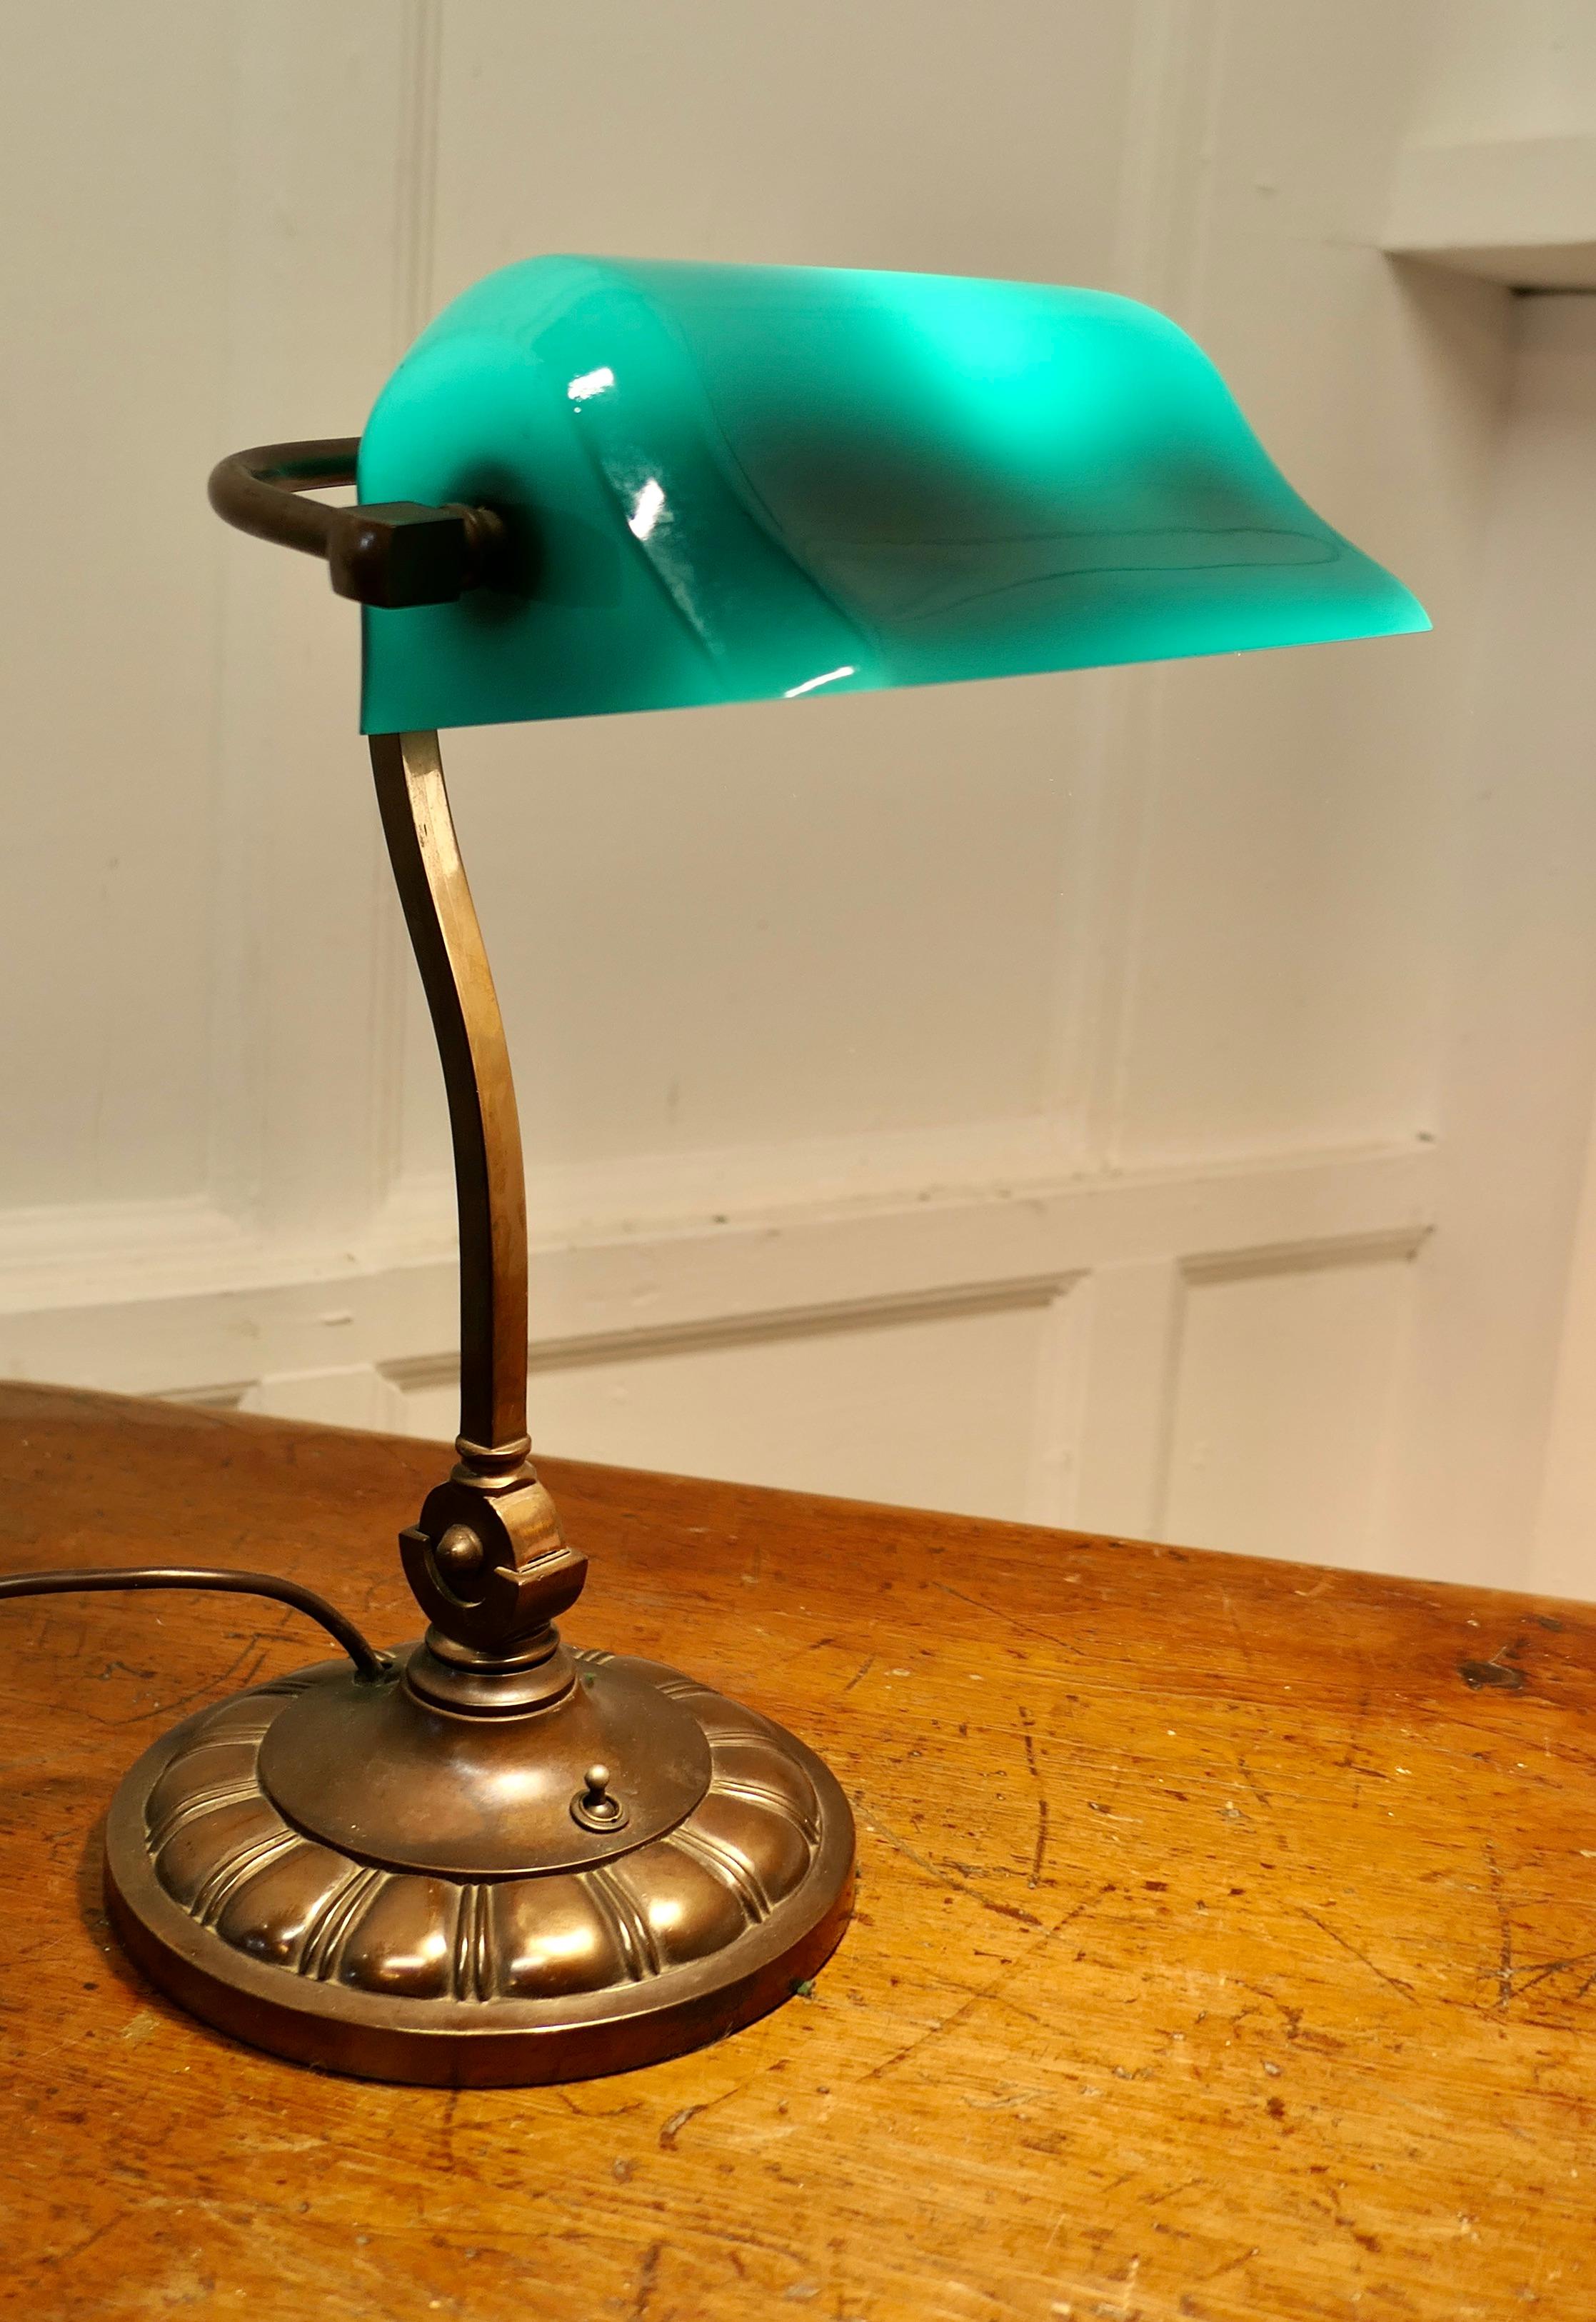 Schreibtischlampe aus Kupfer und grünem Glas für Anwälte aus dem frühen 20.

Eine schöne und selten zu sehende schwere Qualität voll einstellbar frühen Vintage Barrister's Messing Schreibtischlampe, mit seinem ursprünglichen grünen Glas